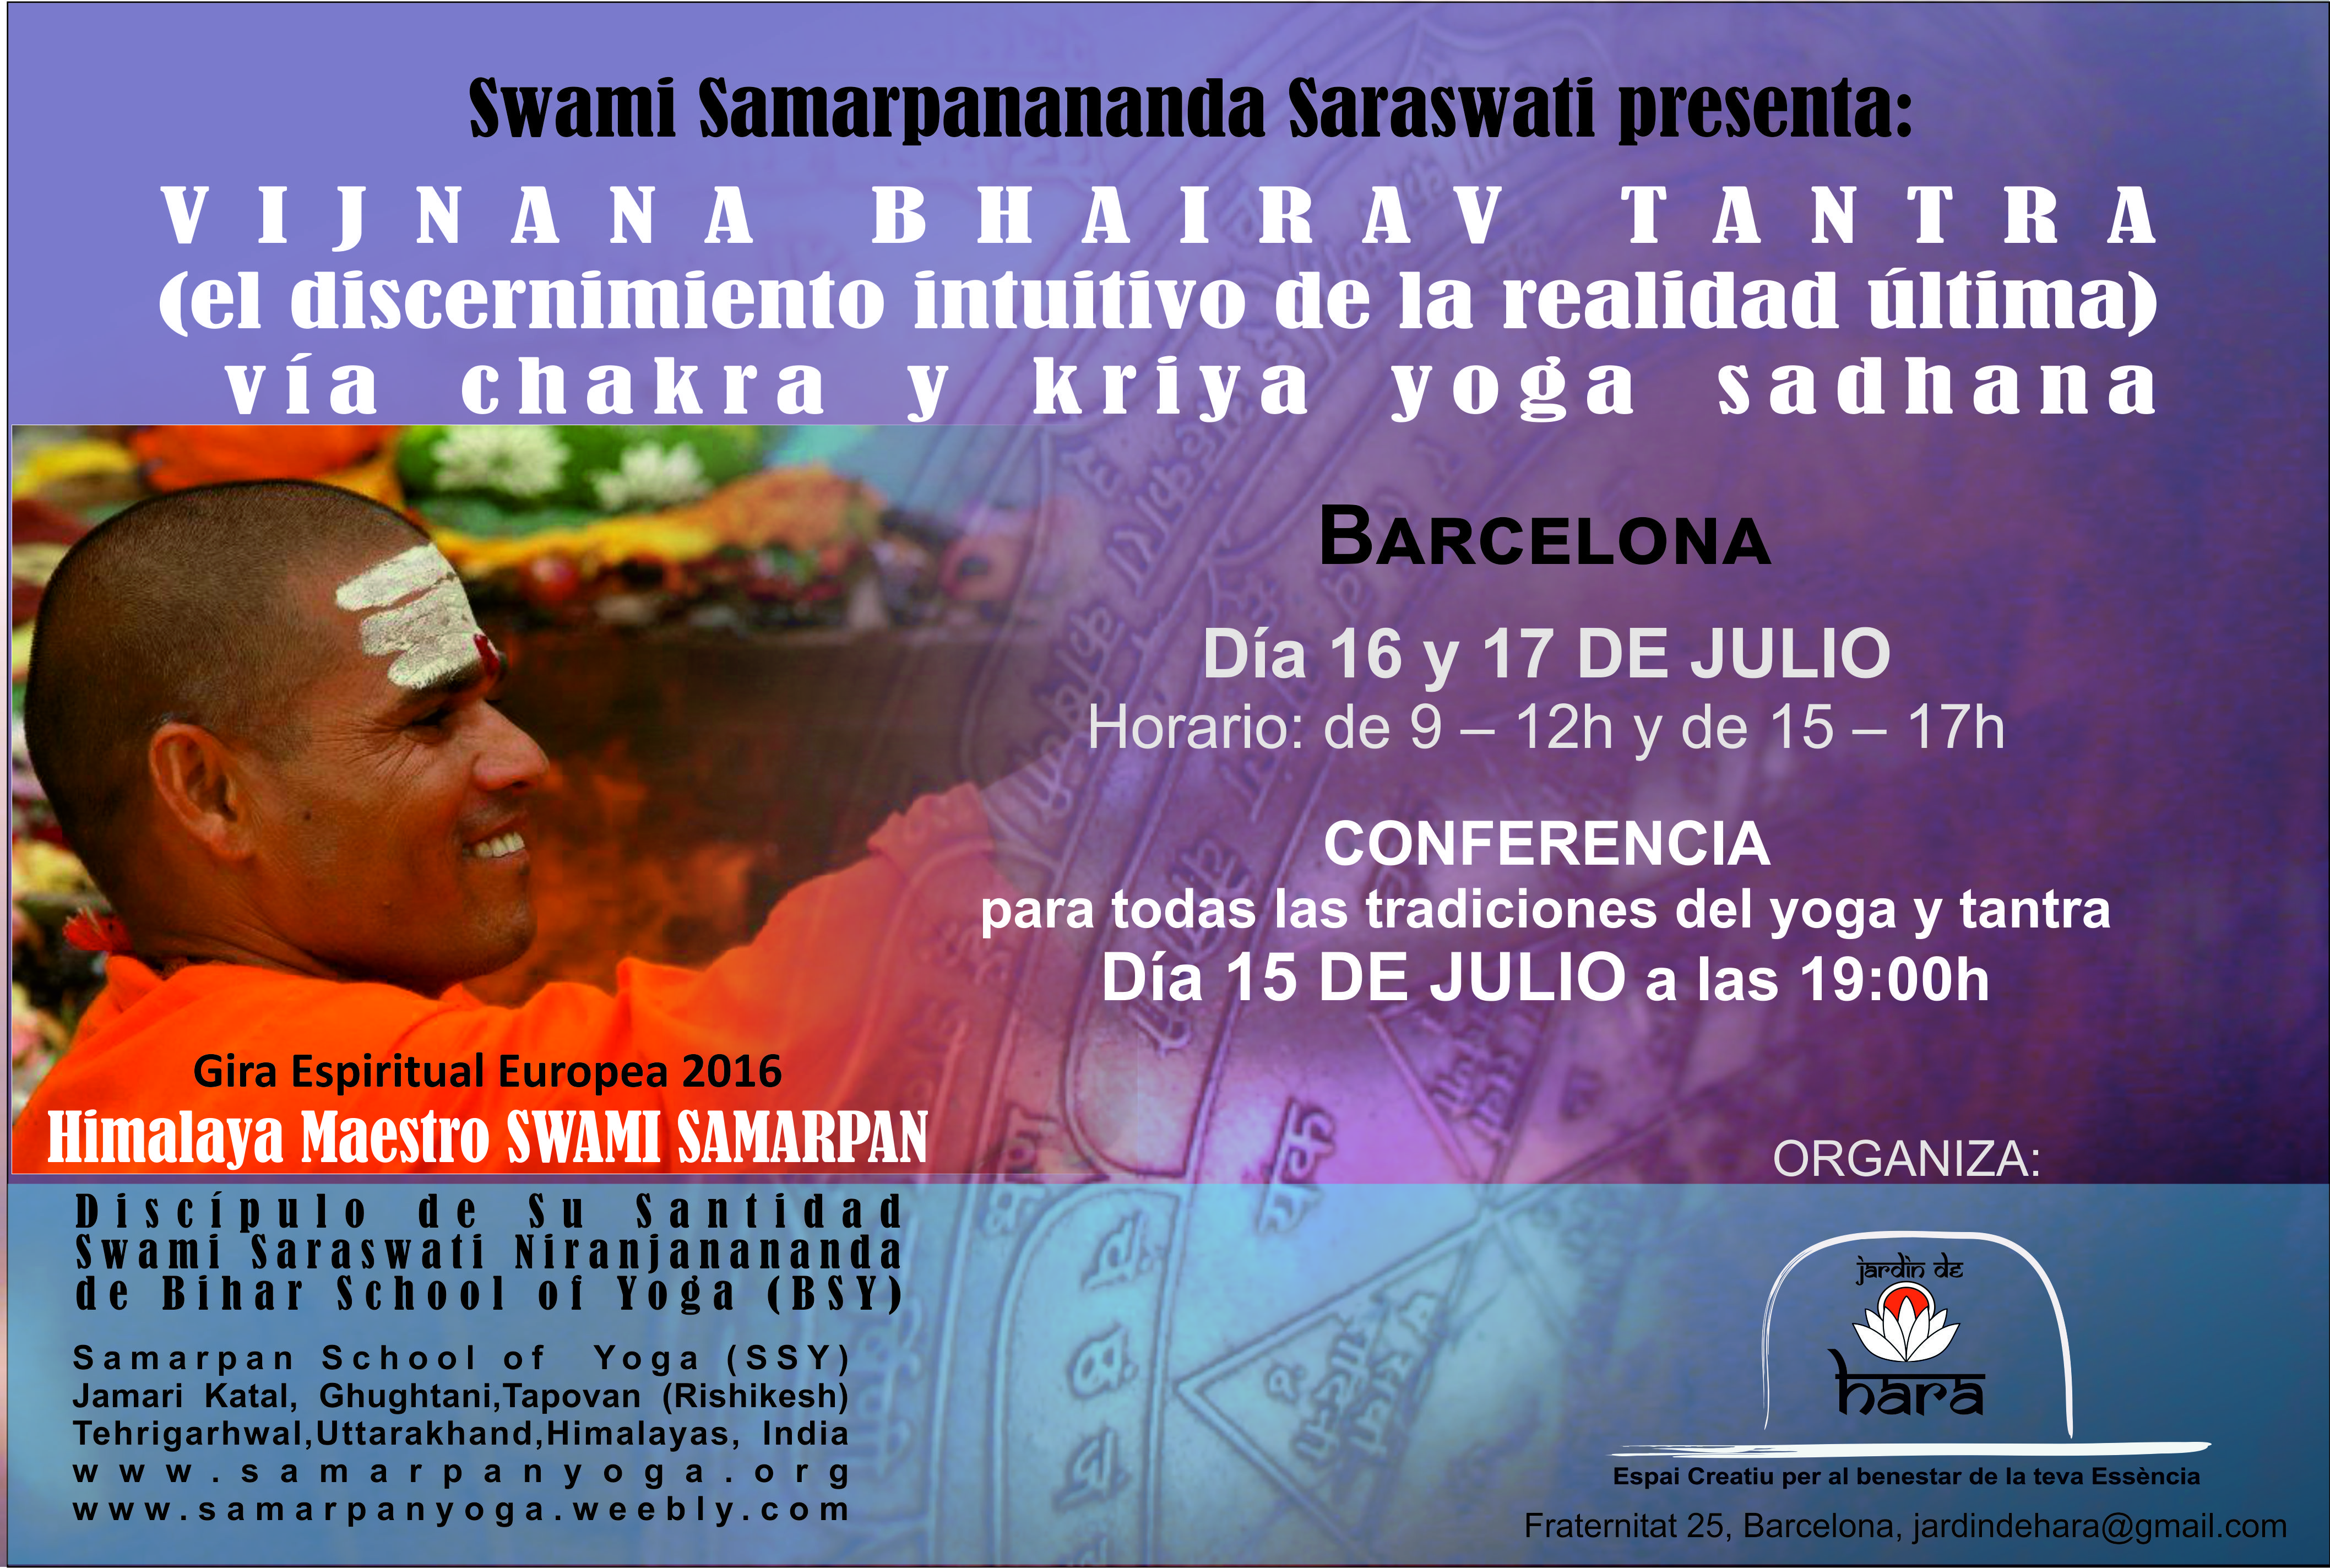 Swami Samarpan